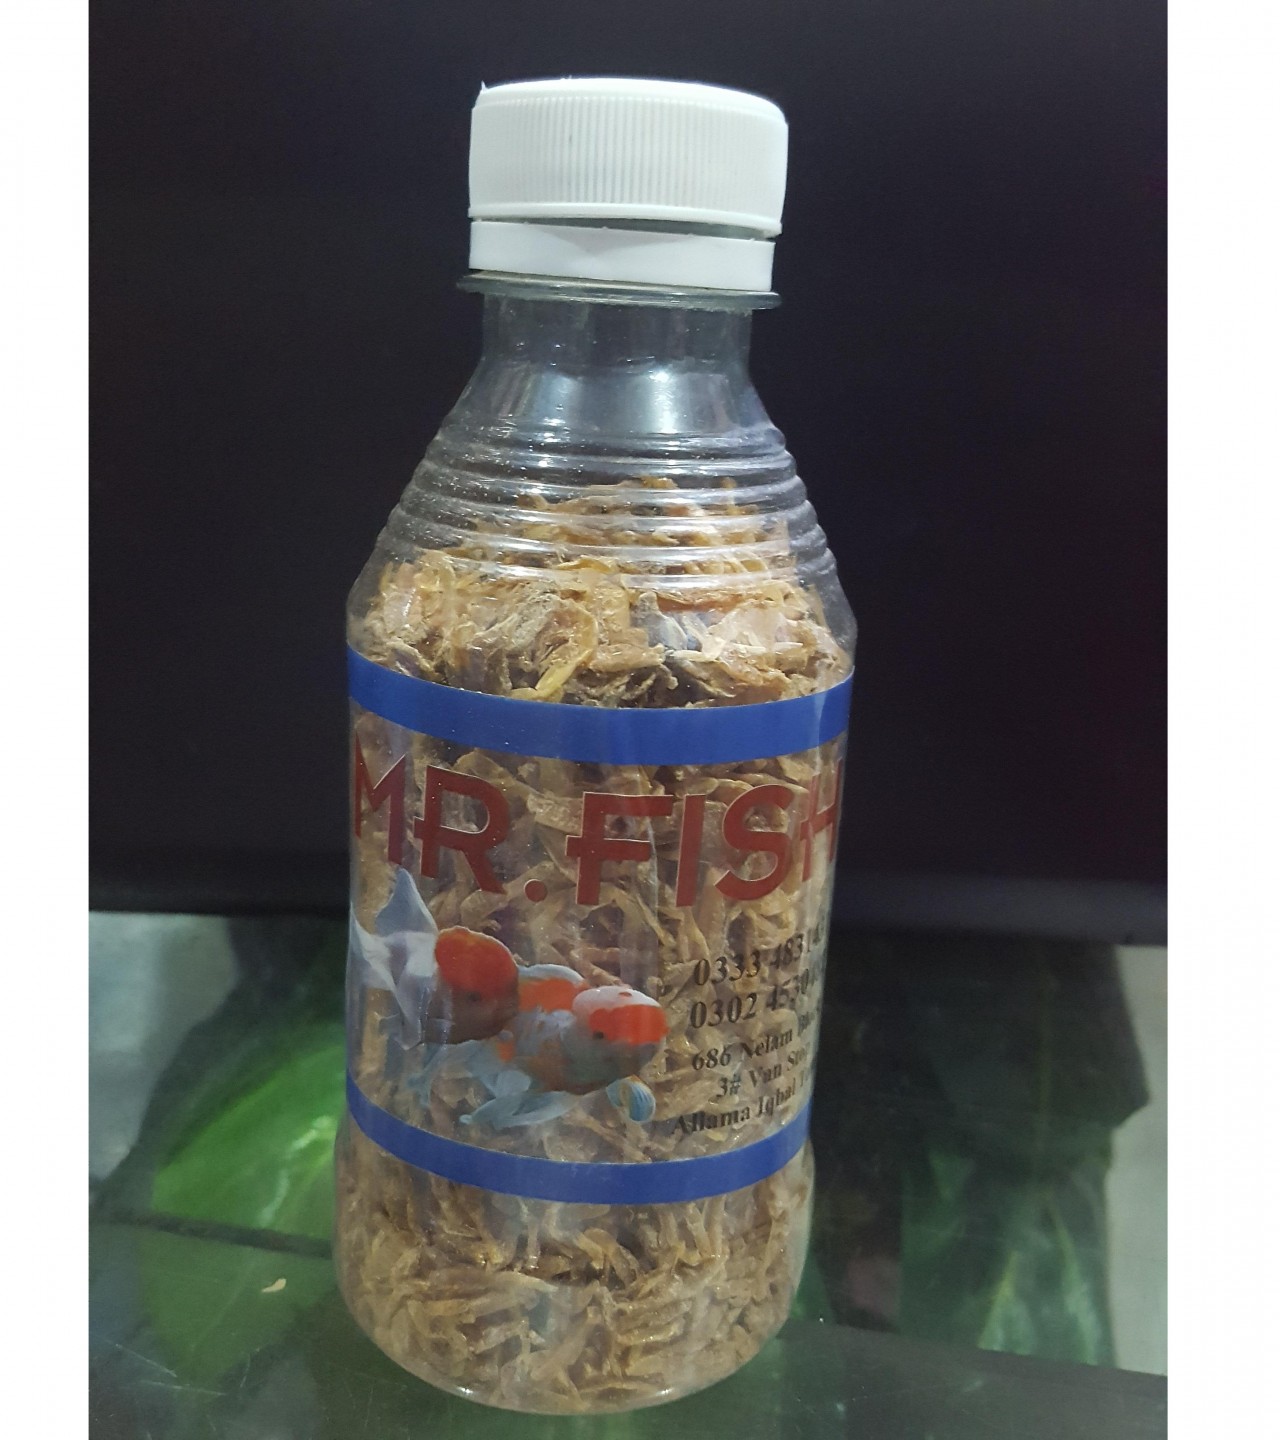 Mr. Fish (50g) - Natural Dried Shrimps Fish Food, Turtle, Terrapin, Reptile Food Aquarium Fish Food